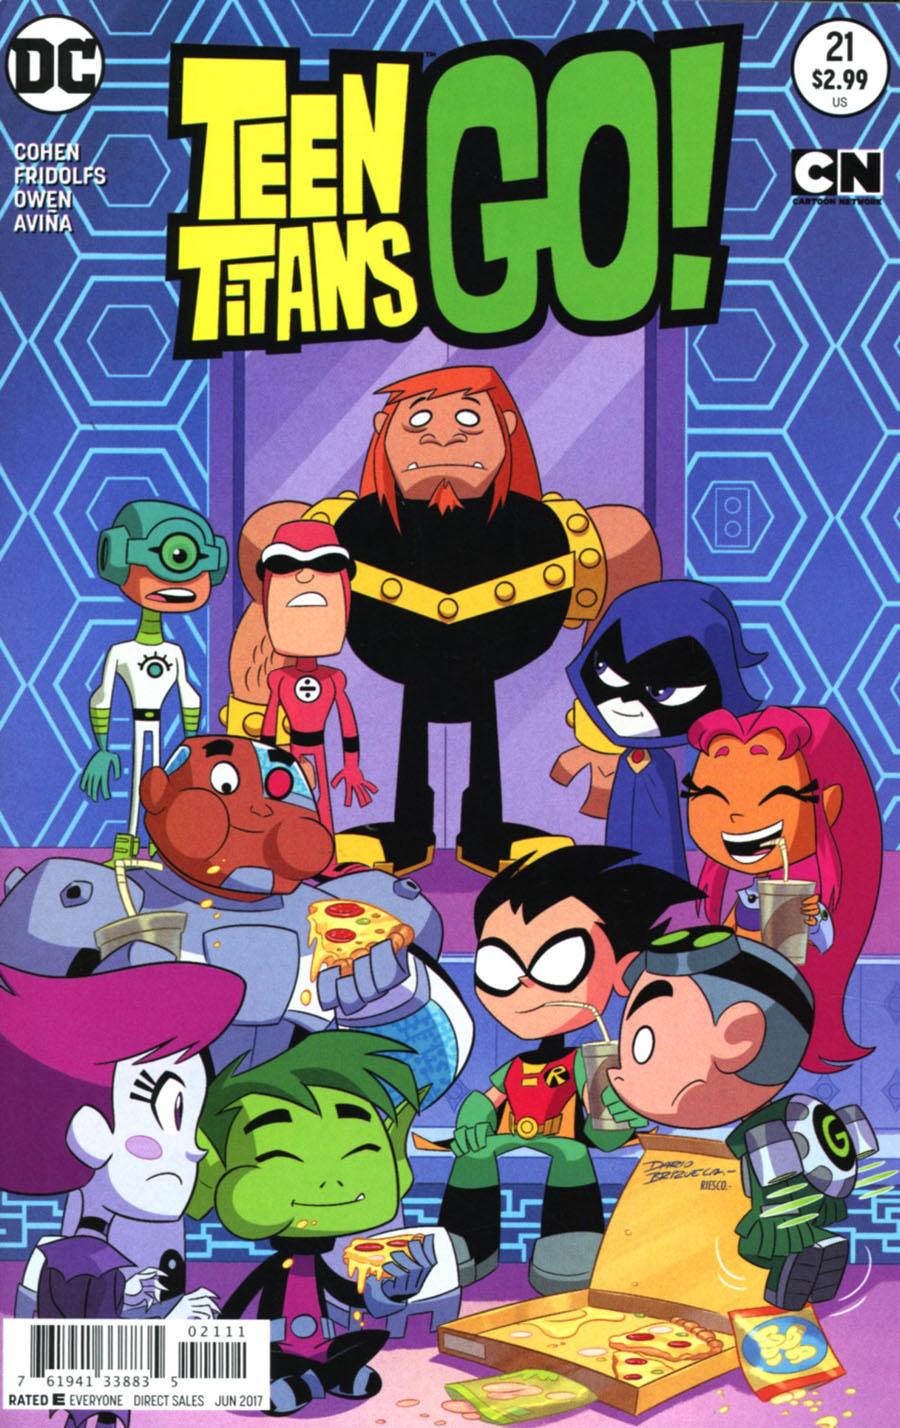 Teen Titans Go Vol. 2 #21